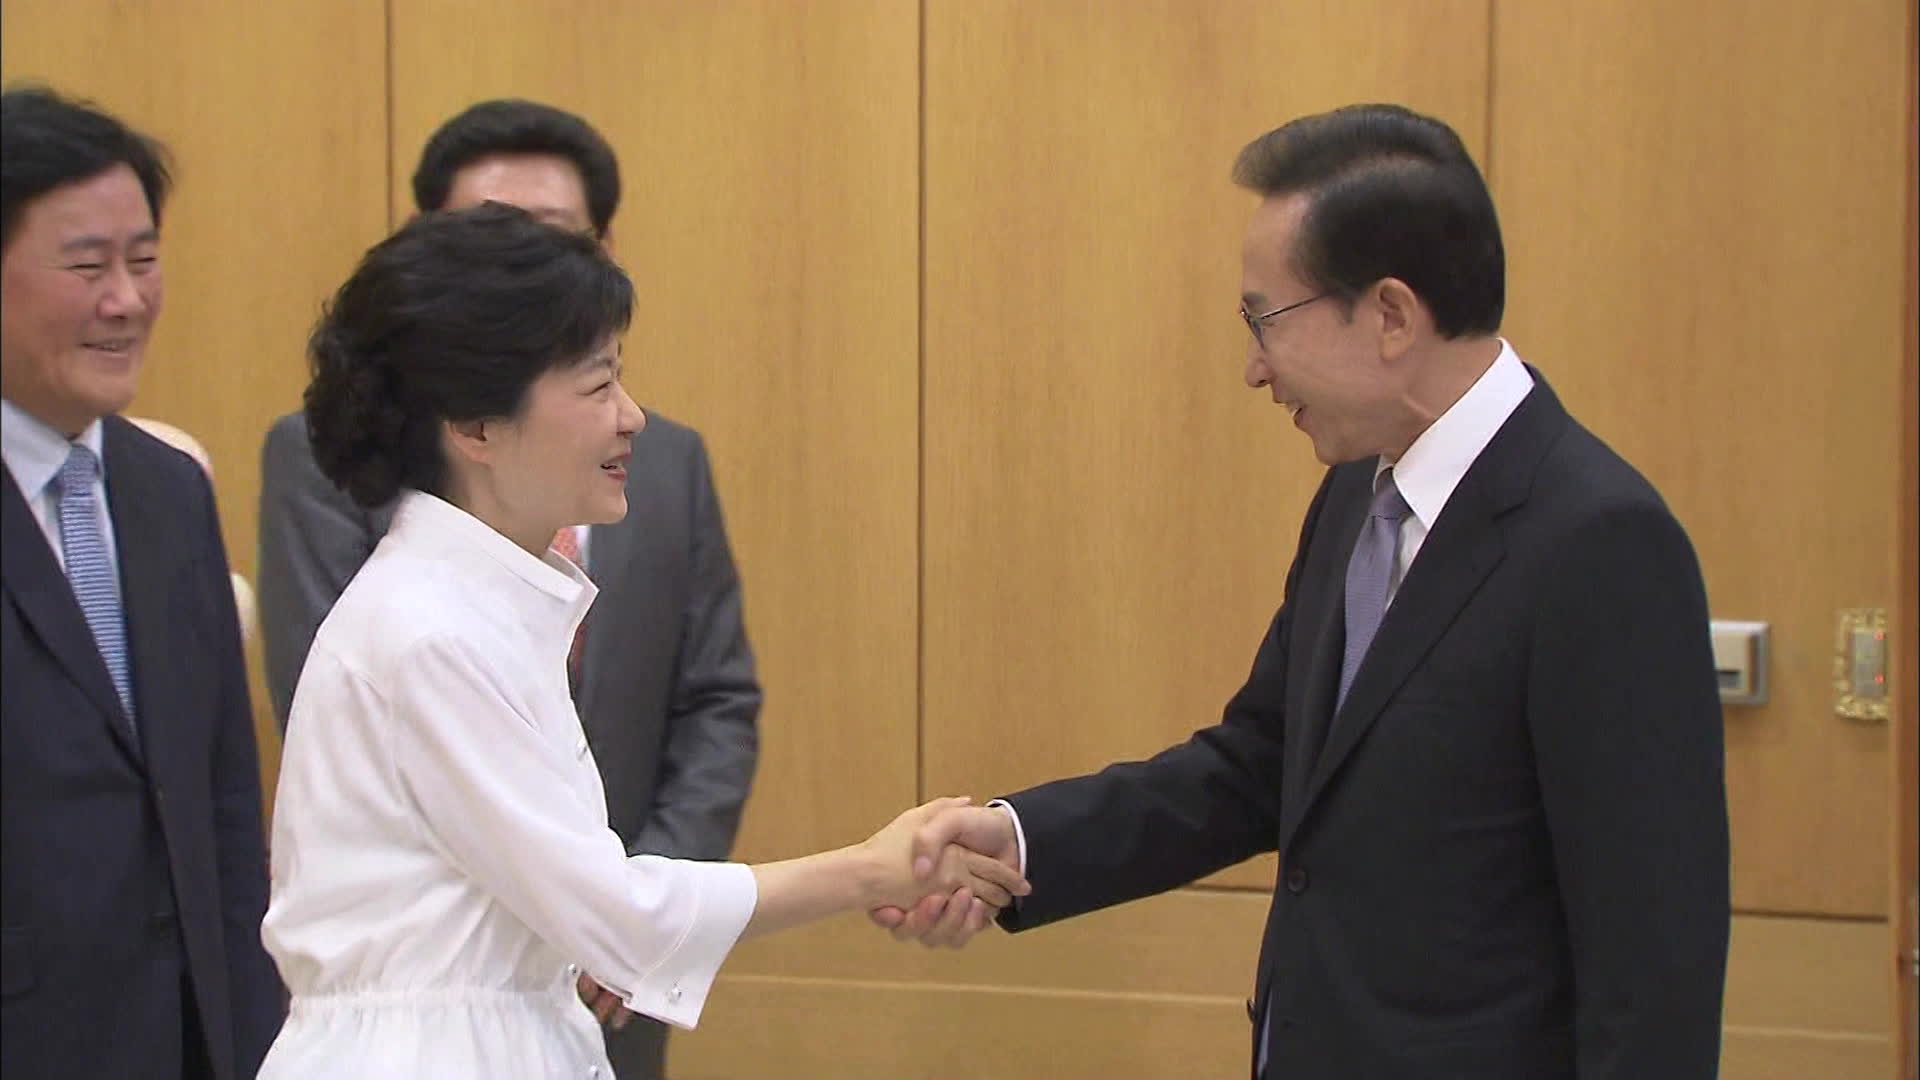 2012년 8월 20일 새누리당 대선 후보로 선출된 박근혜 후보. 13일 만인 9월 2일 청와대에서 이명박 당시 대통령과 만났다. (출처 : KBS 아카이브)